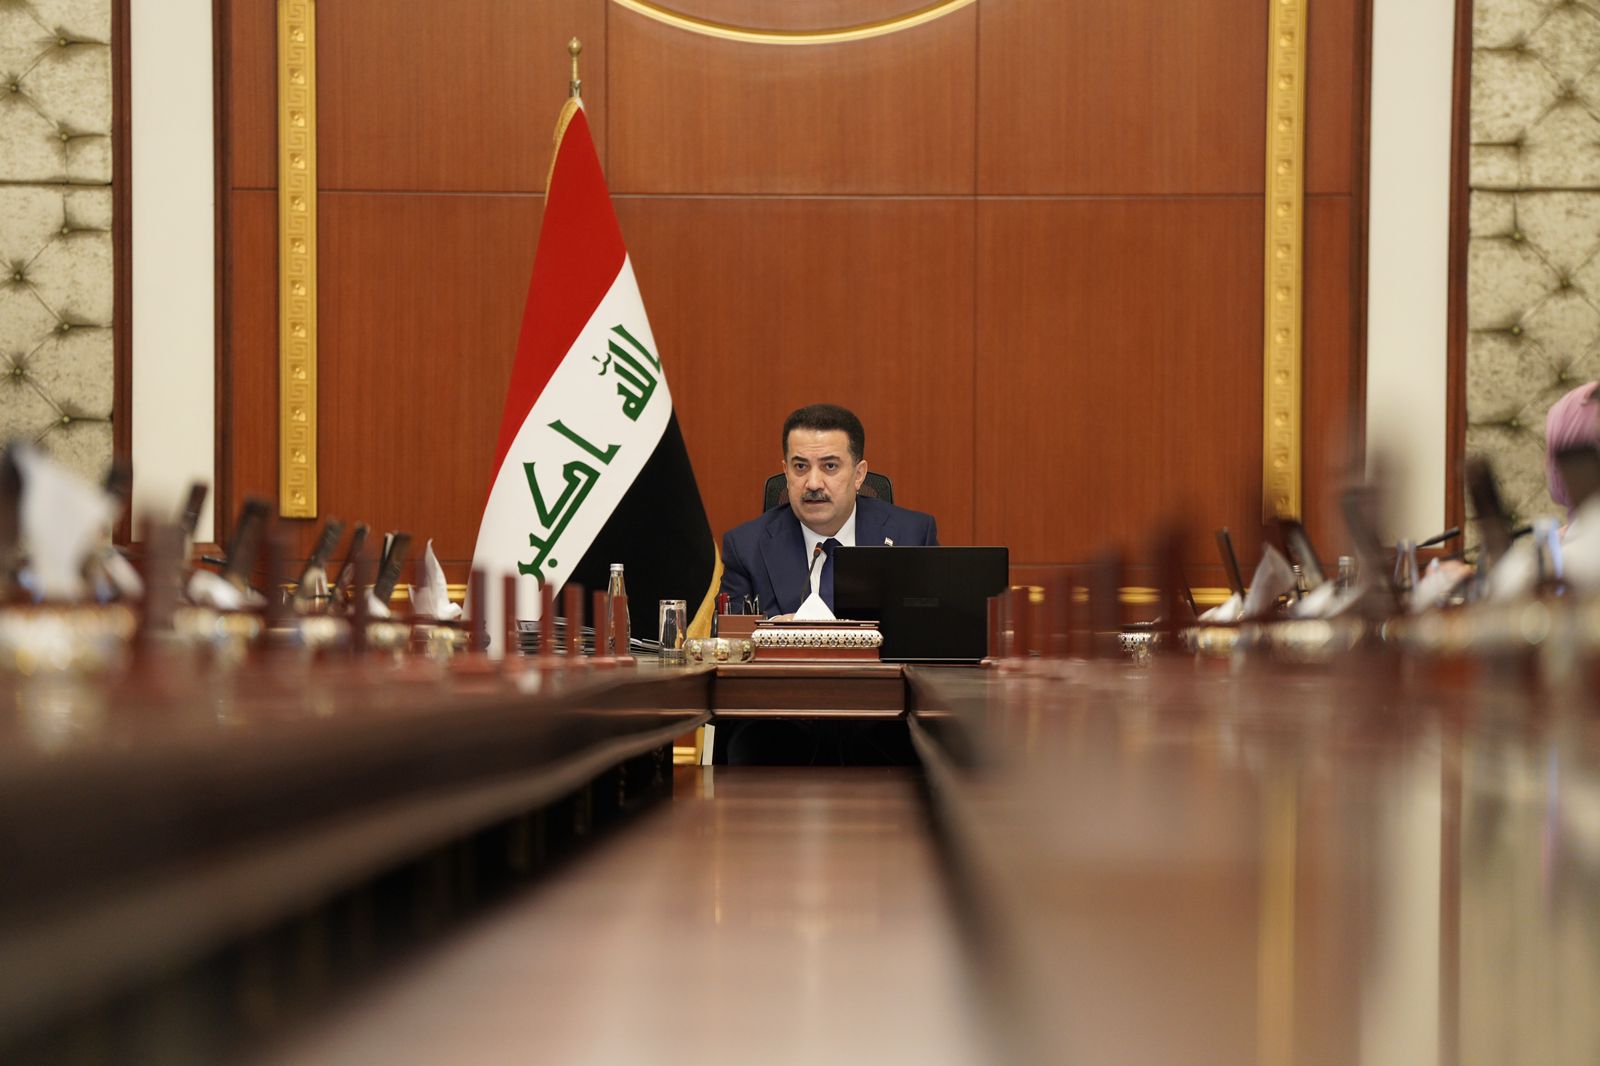 مجلس الوزراء العراقي يصوّت على اعفاء 76 مديراً عاماً بين أصالة ووكالة